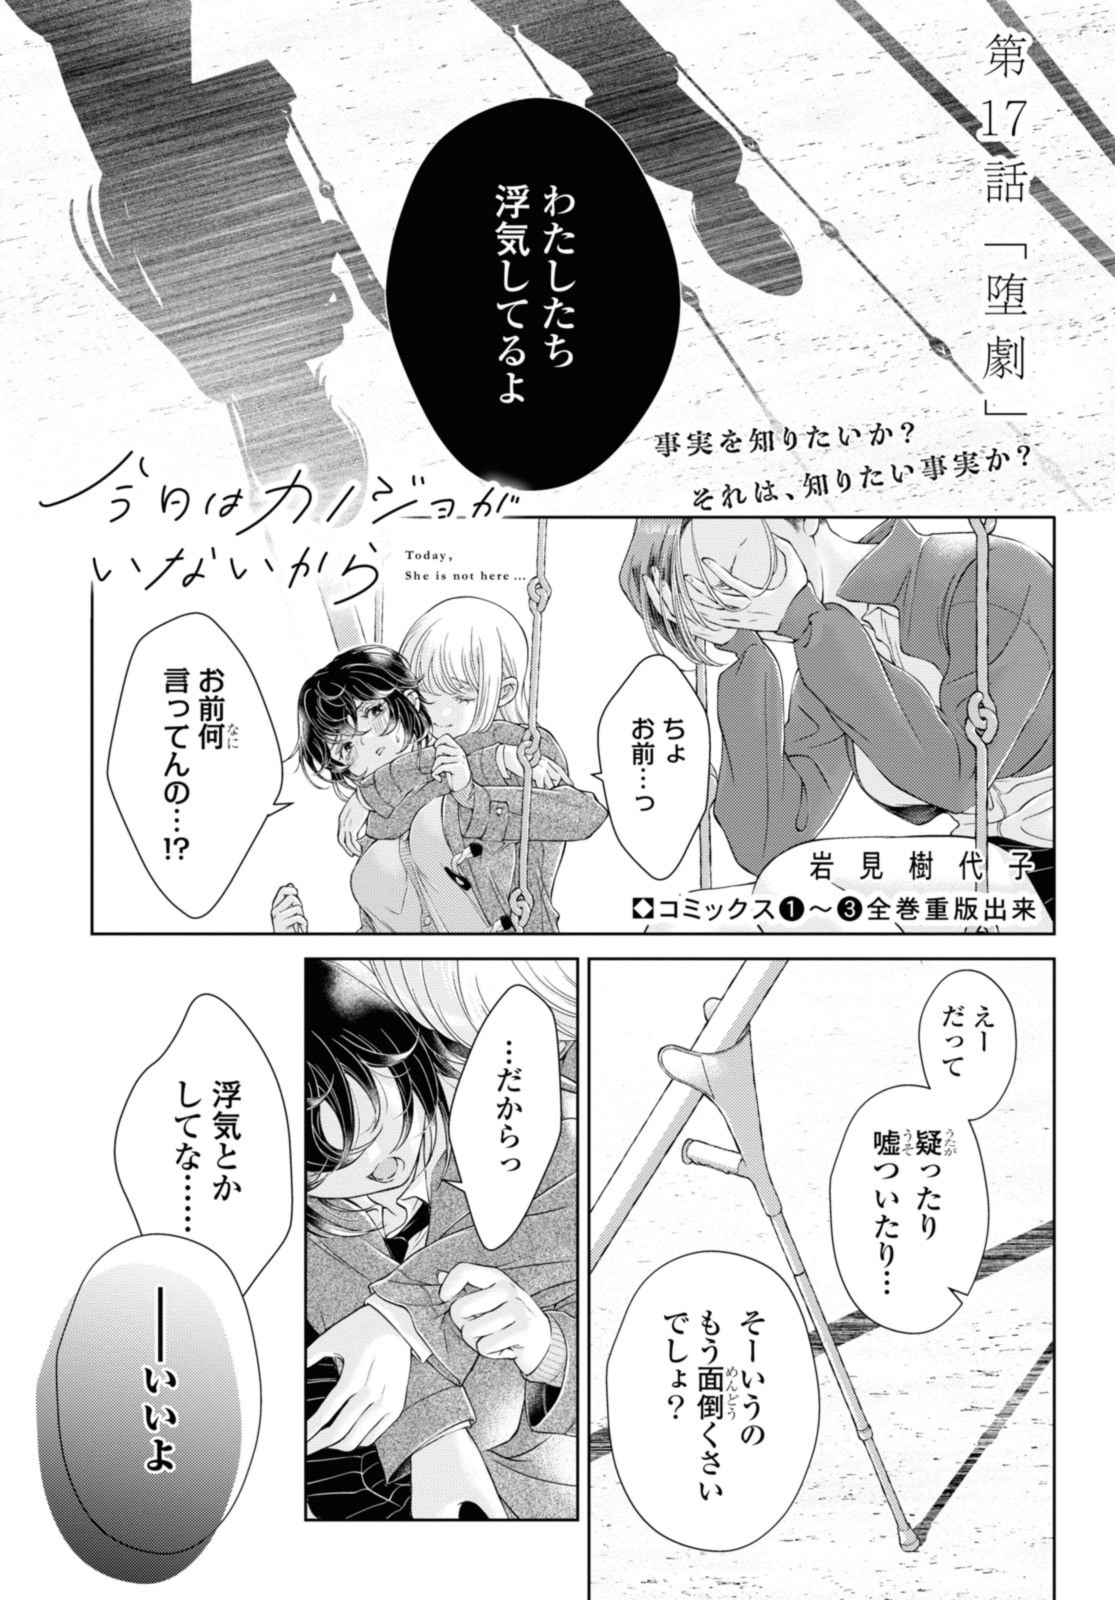 Kyou wa Kanojo ga Inai Kara - Chapter 17.1 - Page 1